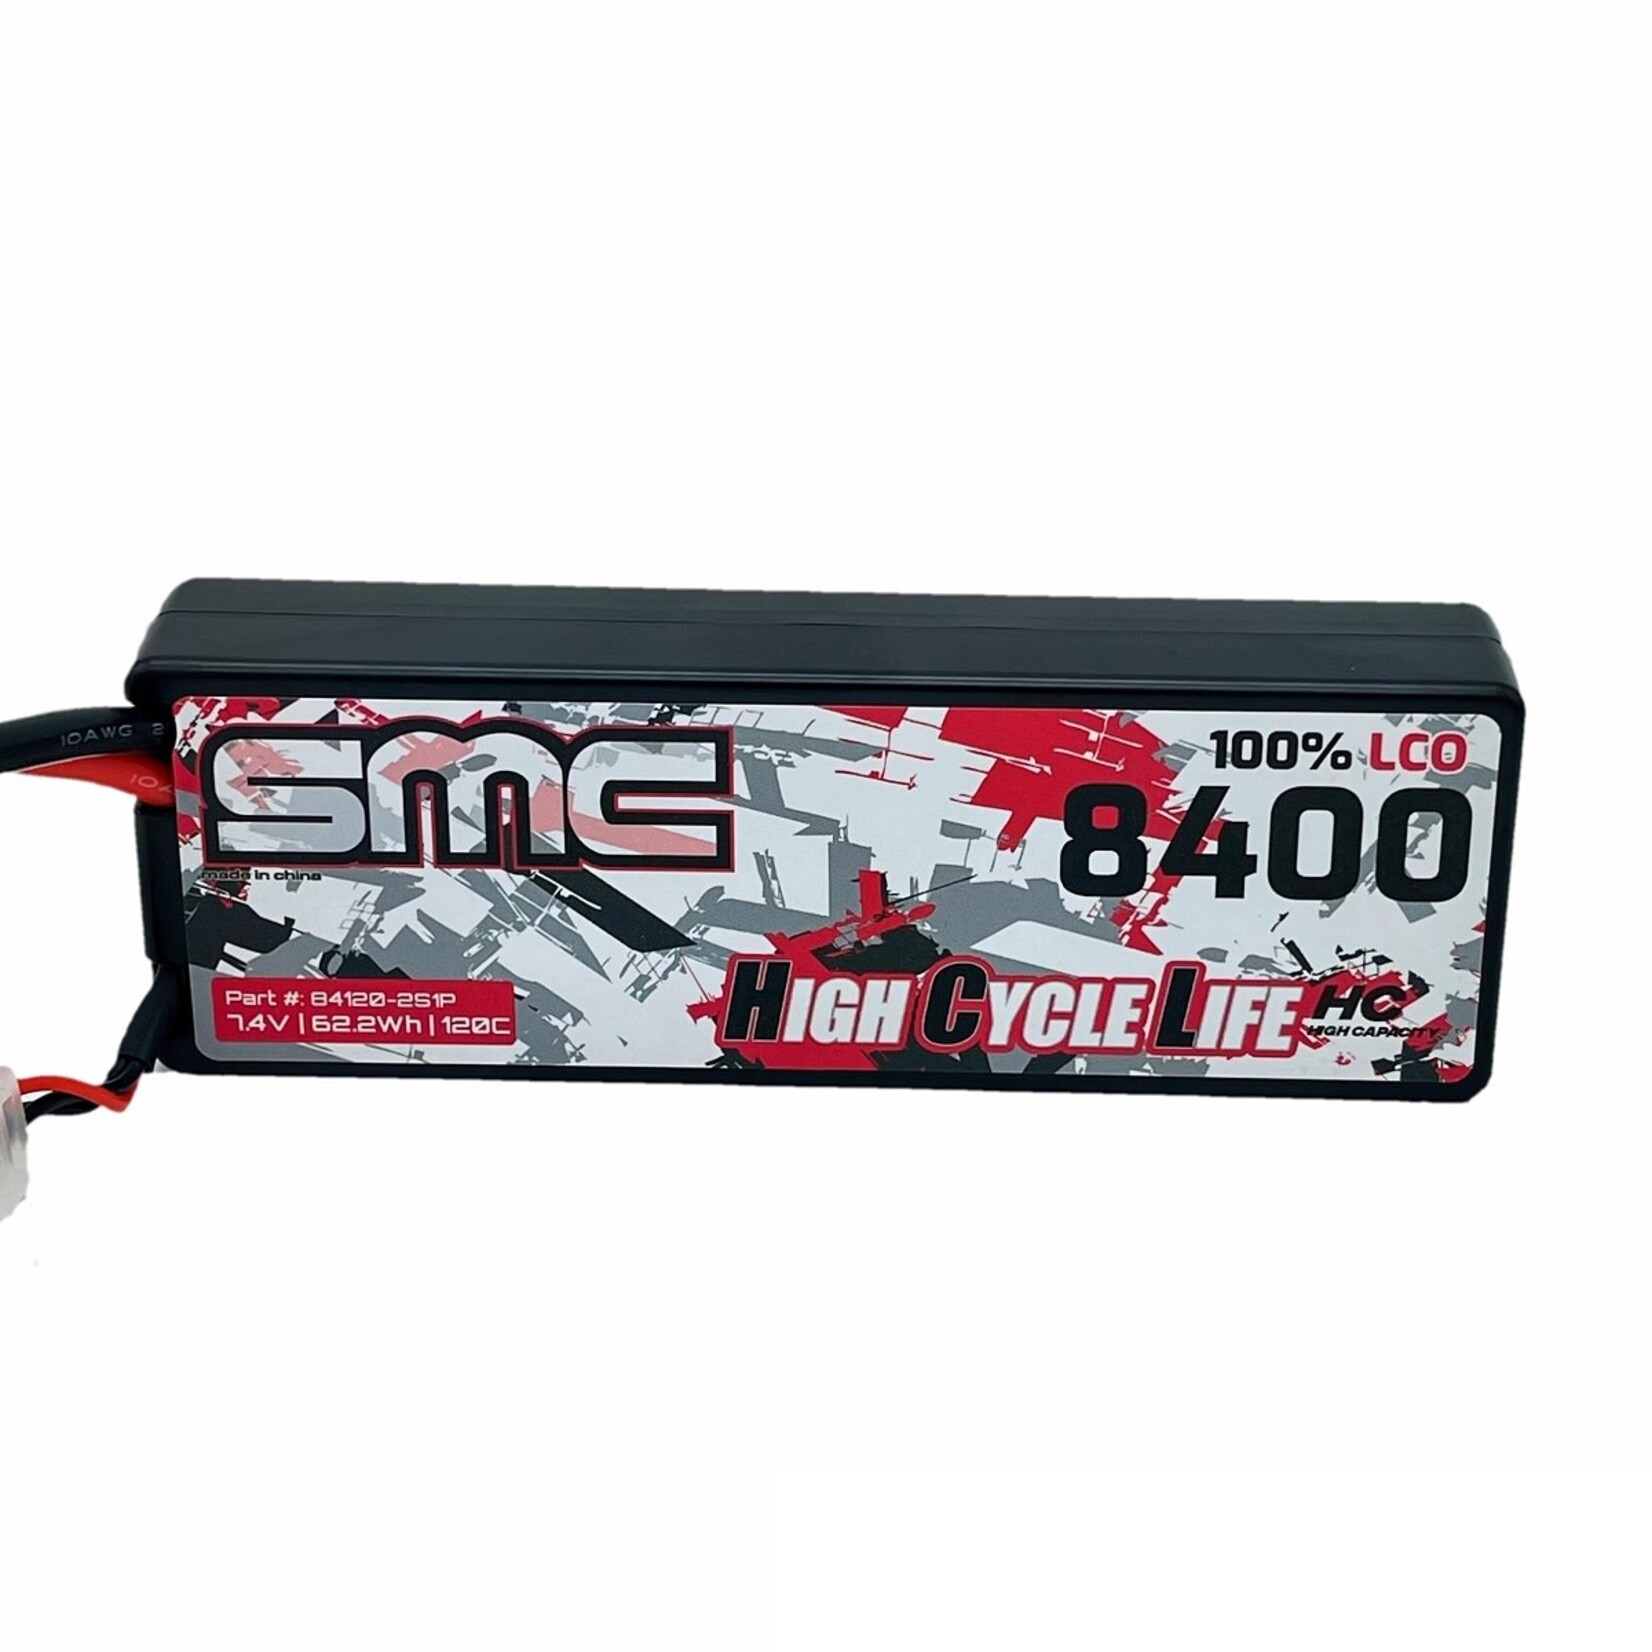 SMC SMC HCL-HC 7.4V-8400mAh 120C Hardcase Battery #84120-2S1P-XT60